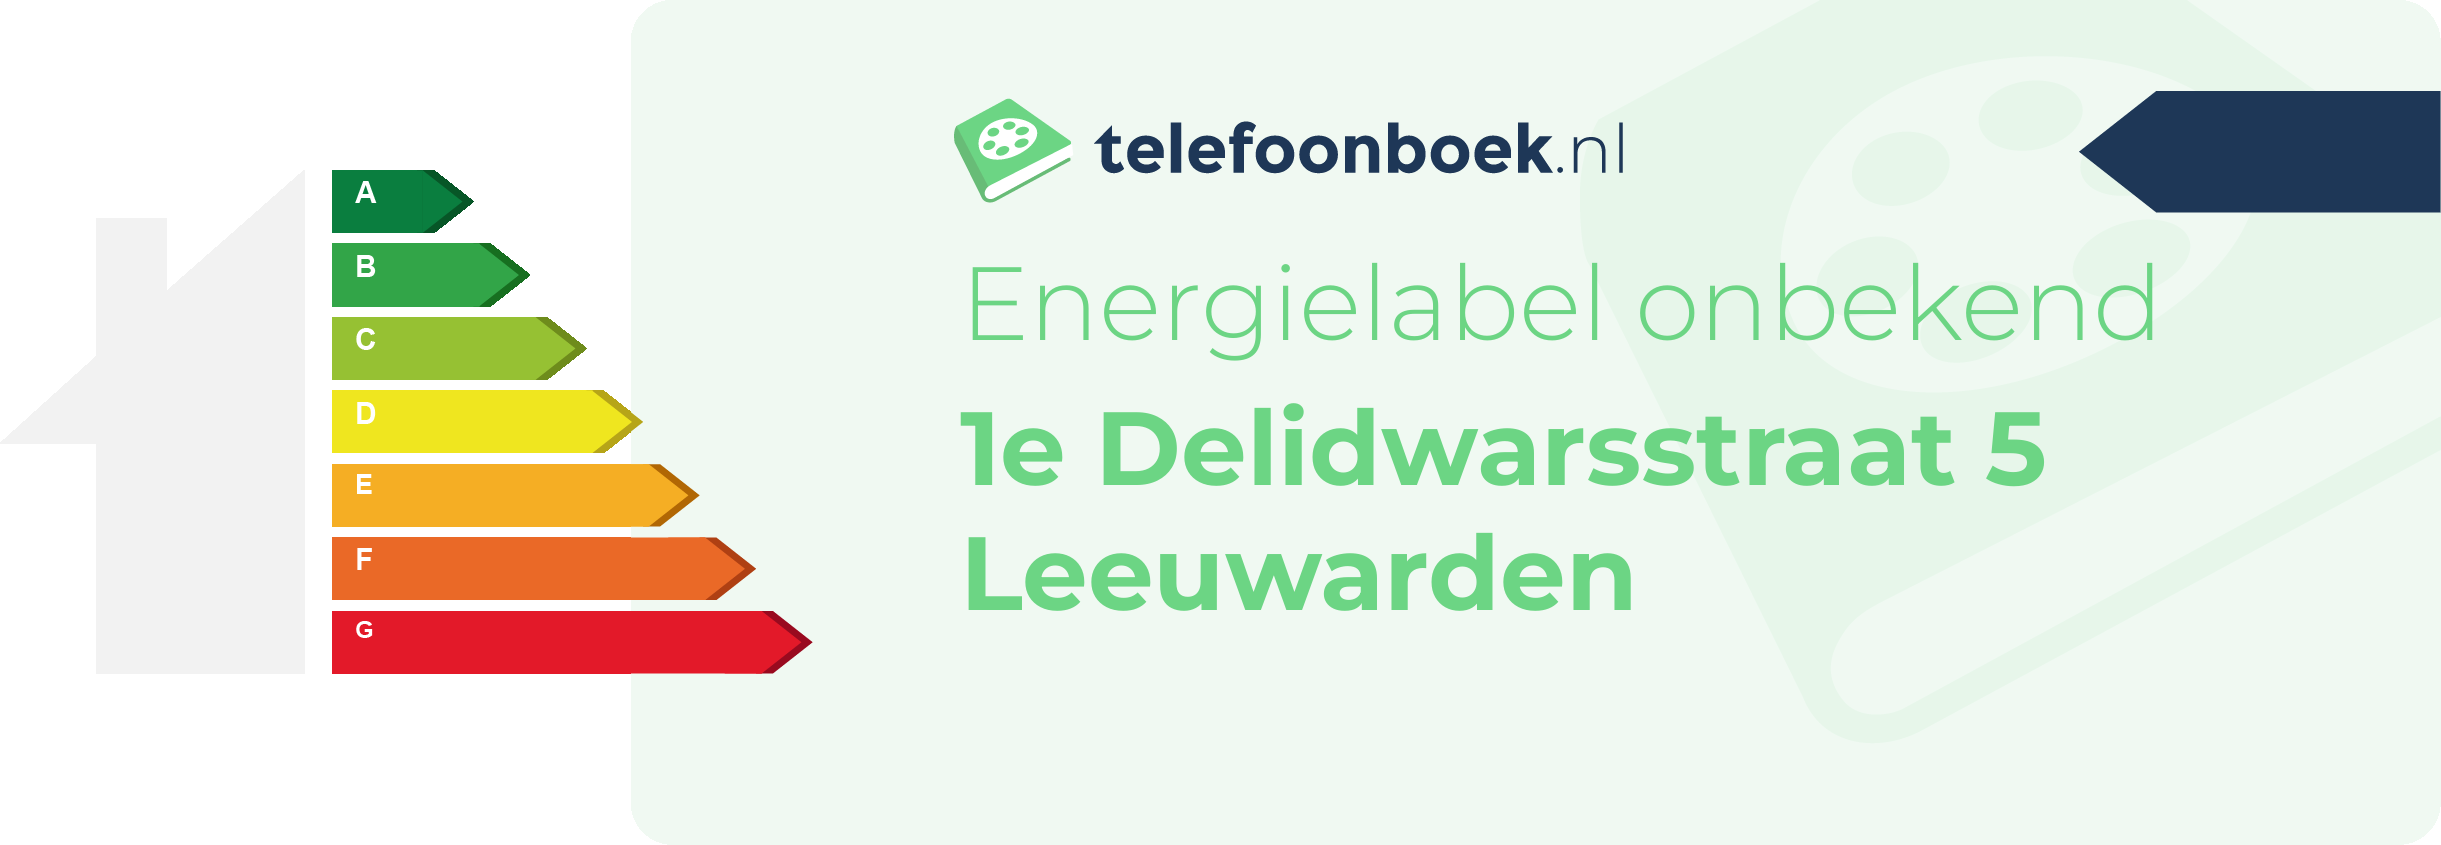 Energielabel 1e Delidwarsstraat 5 Leeuwarden